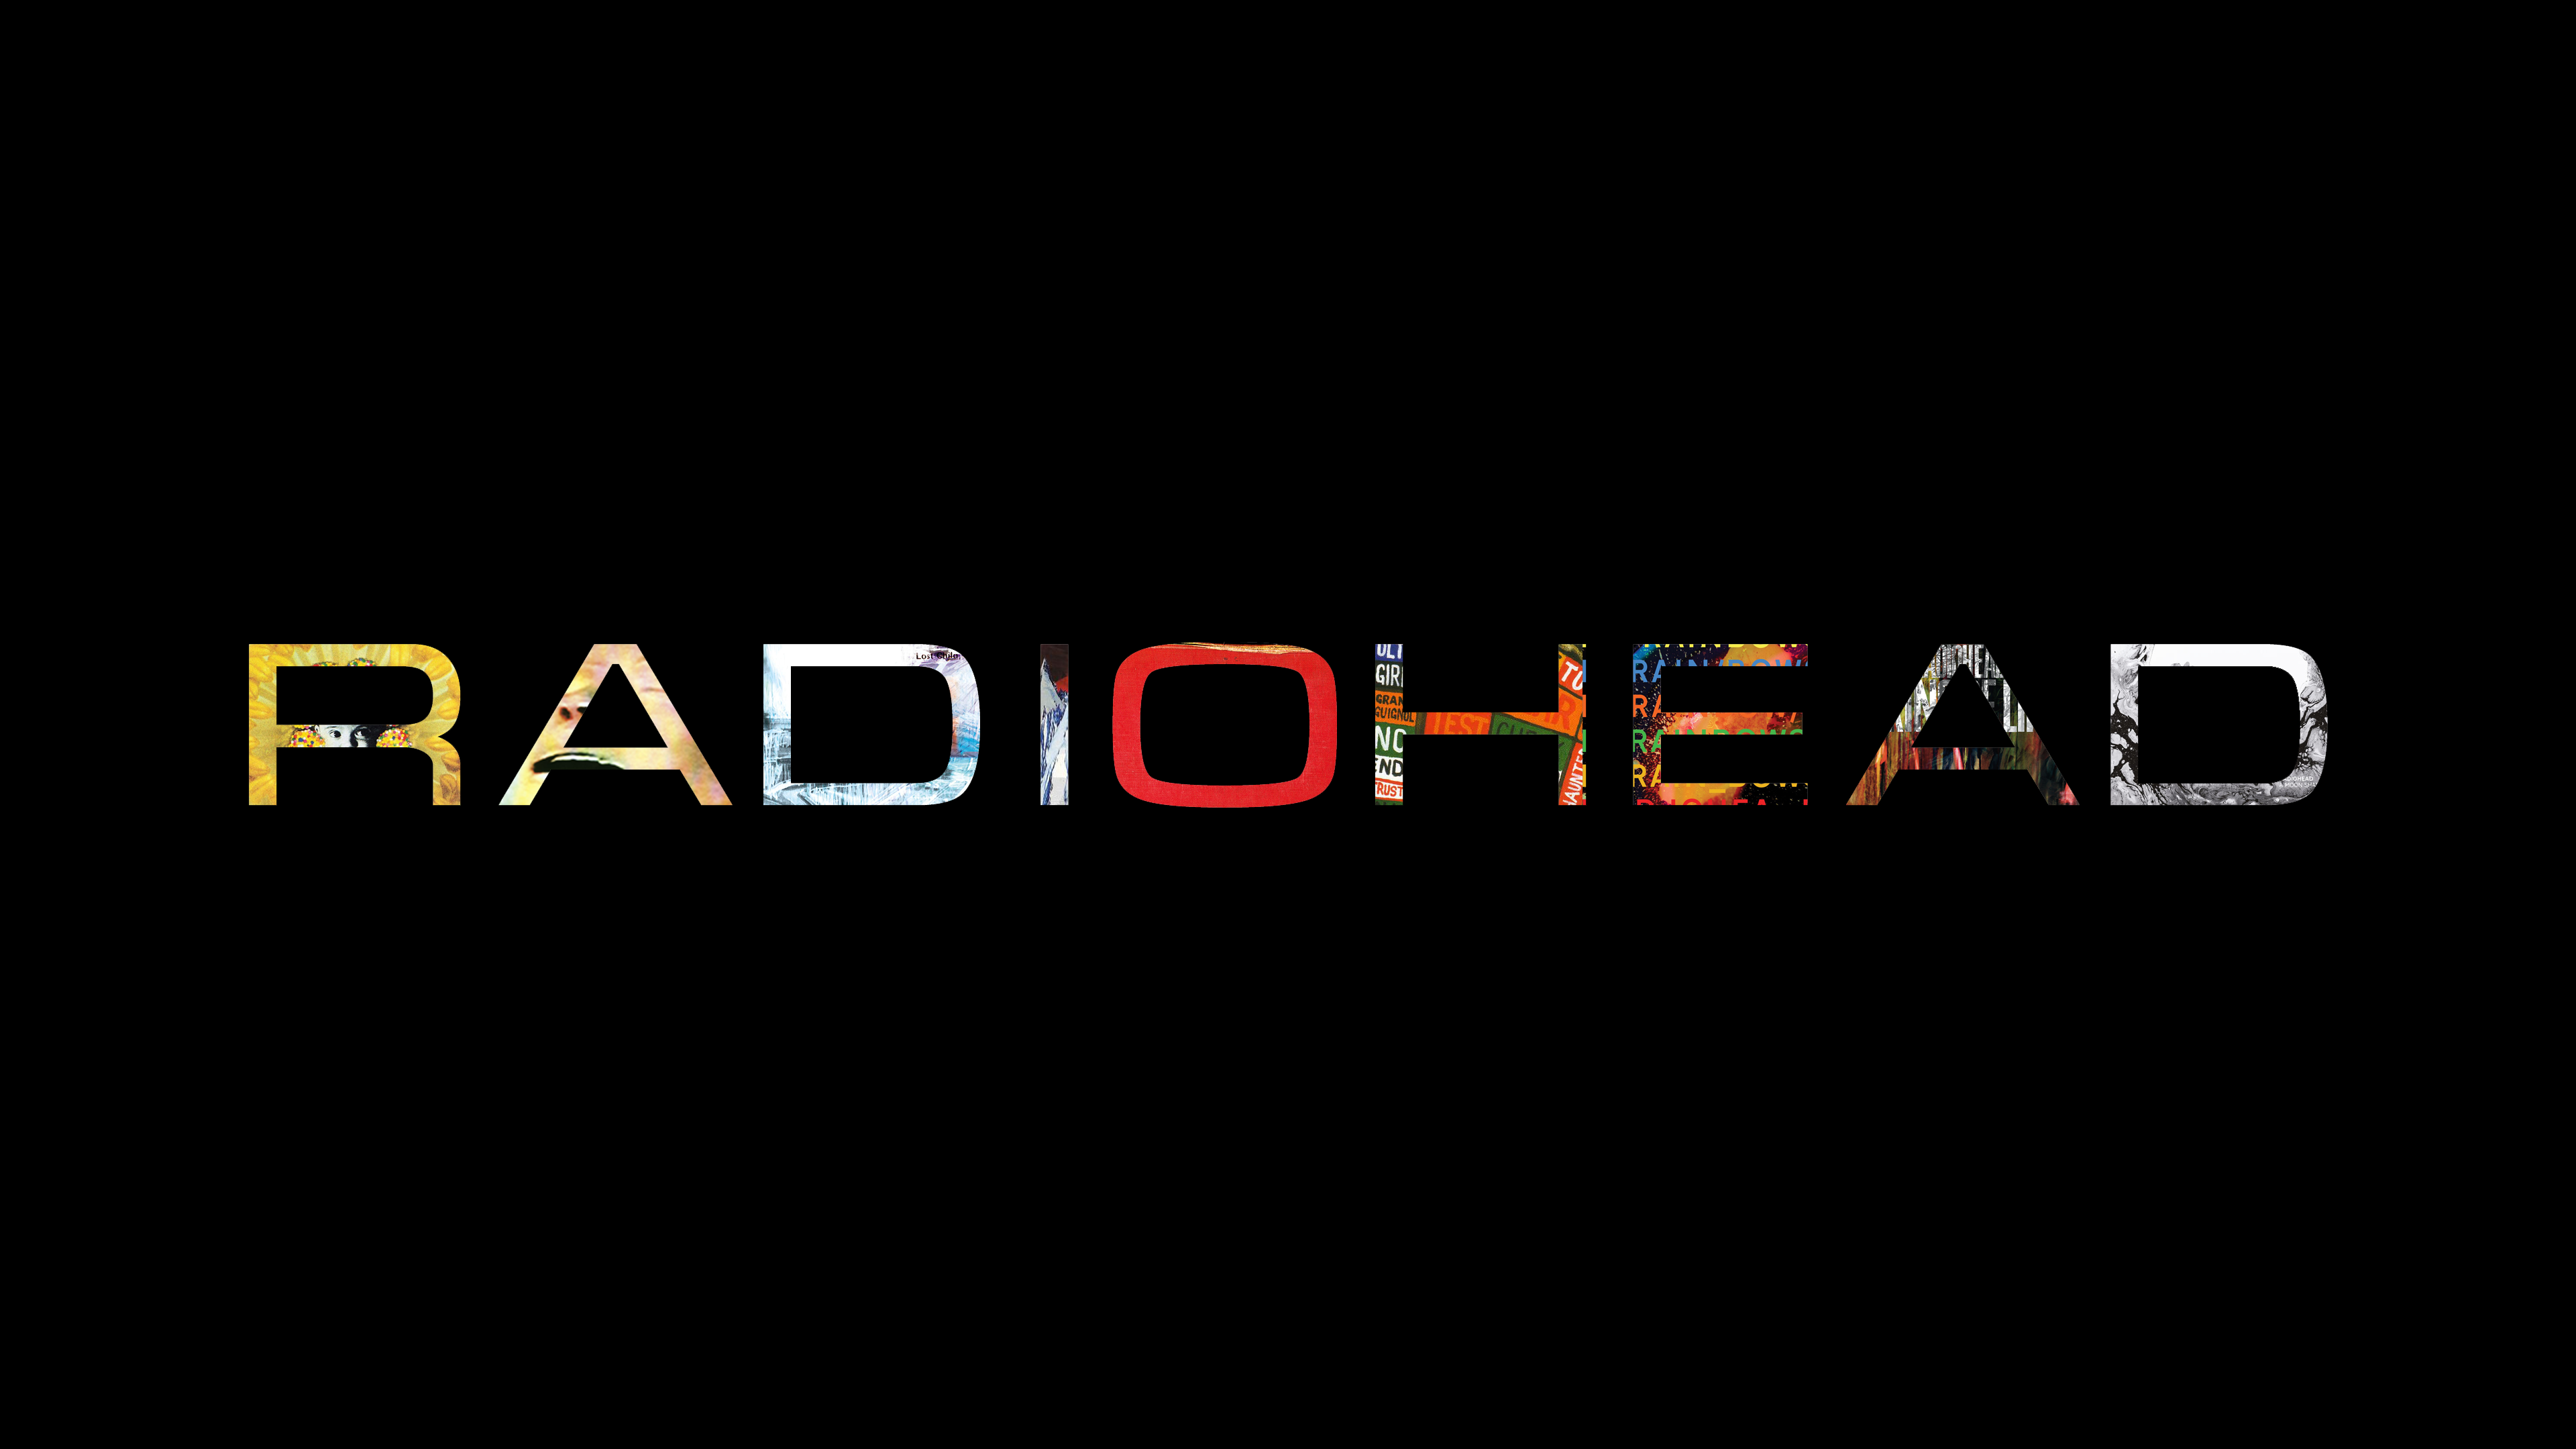 Radiohead Background